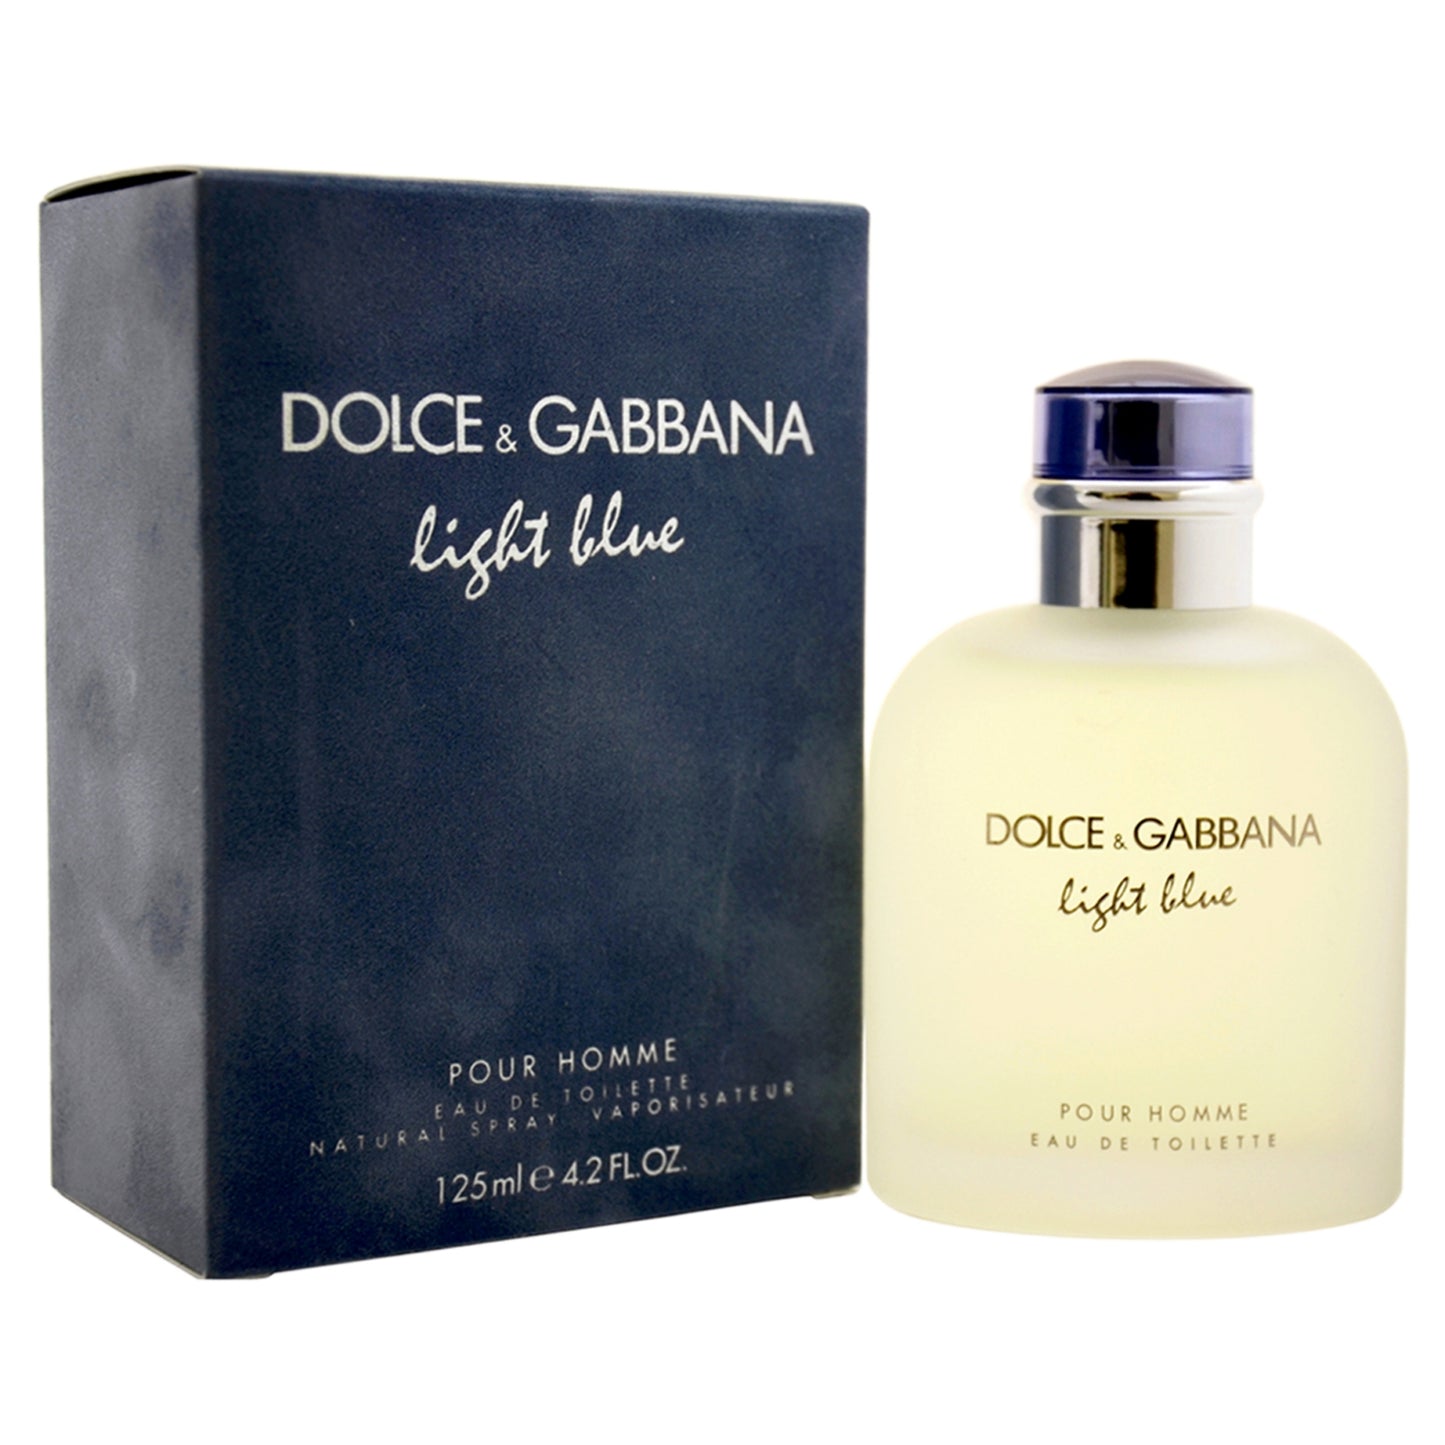 DOLCE & GABBANA LIGHT BLUE 4.2 FLOZ